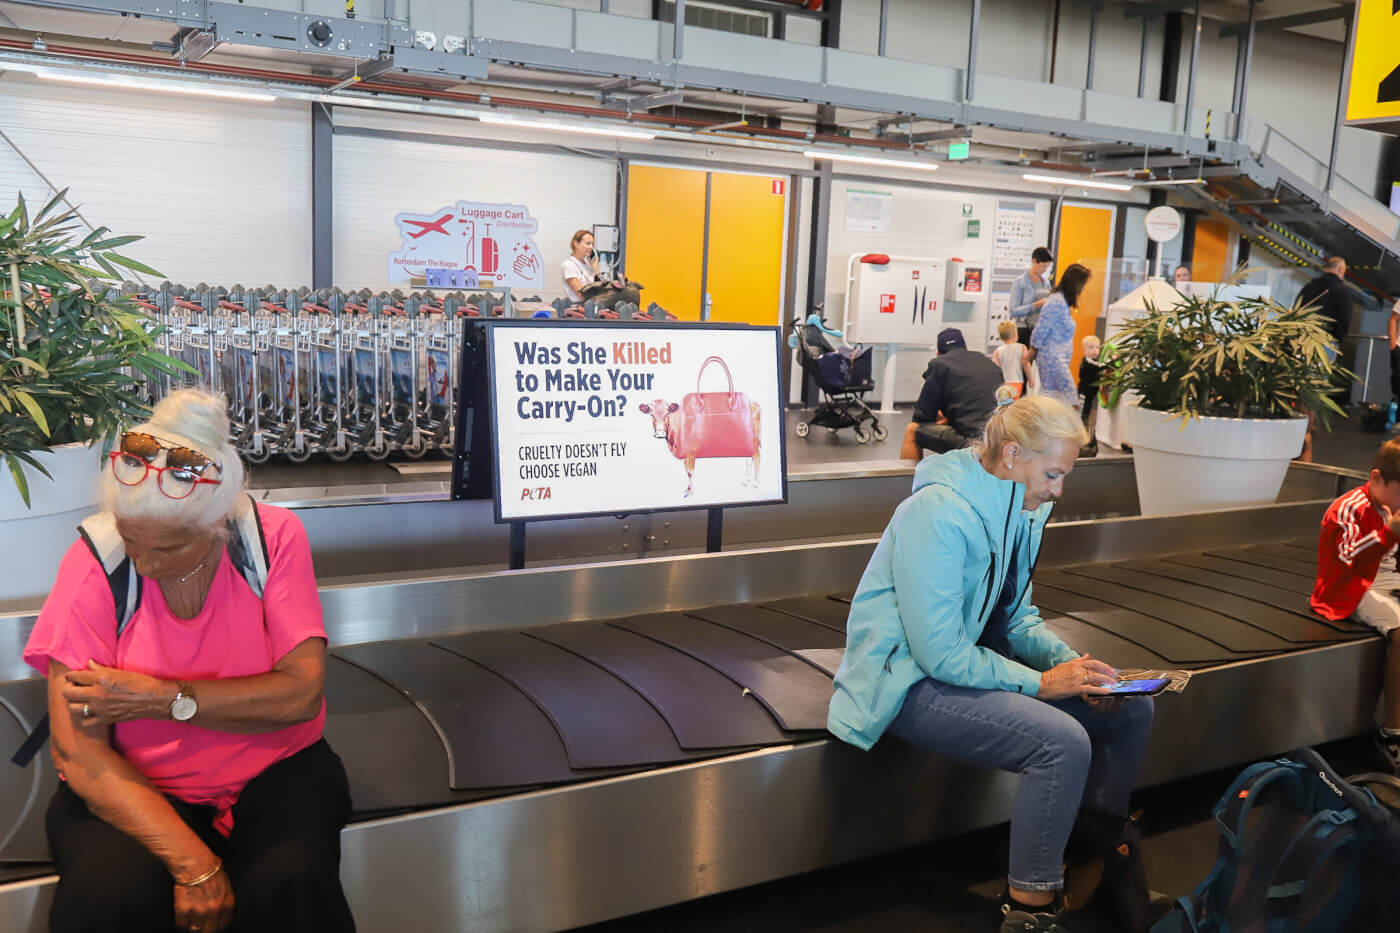 Wreedheid gaat niet op: anti-leer boodschap van PETA landt op Rotterdam The Hague Airport